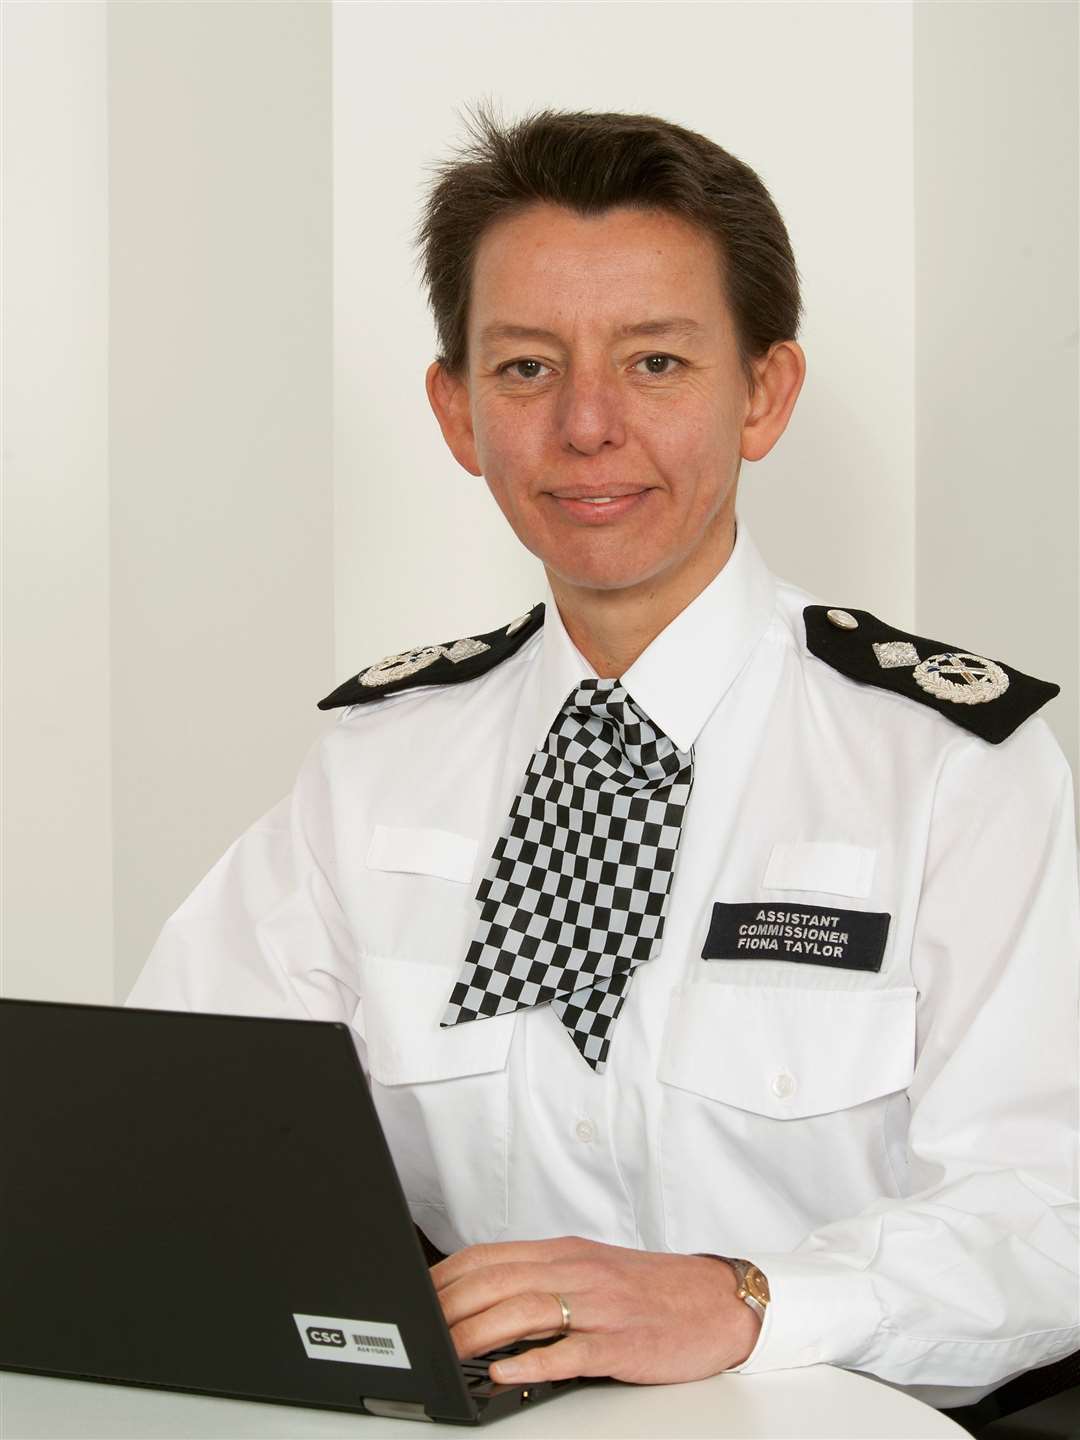 Deputy Chief Constable Fiona Taylor